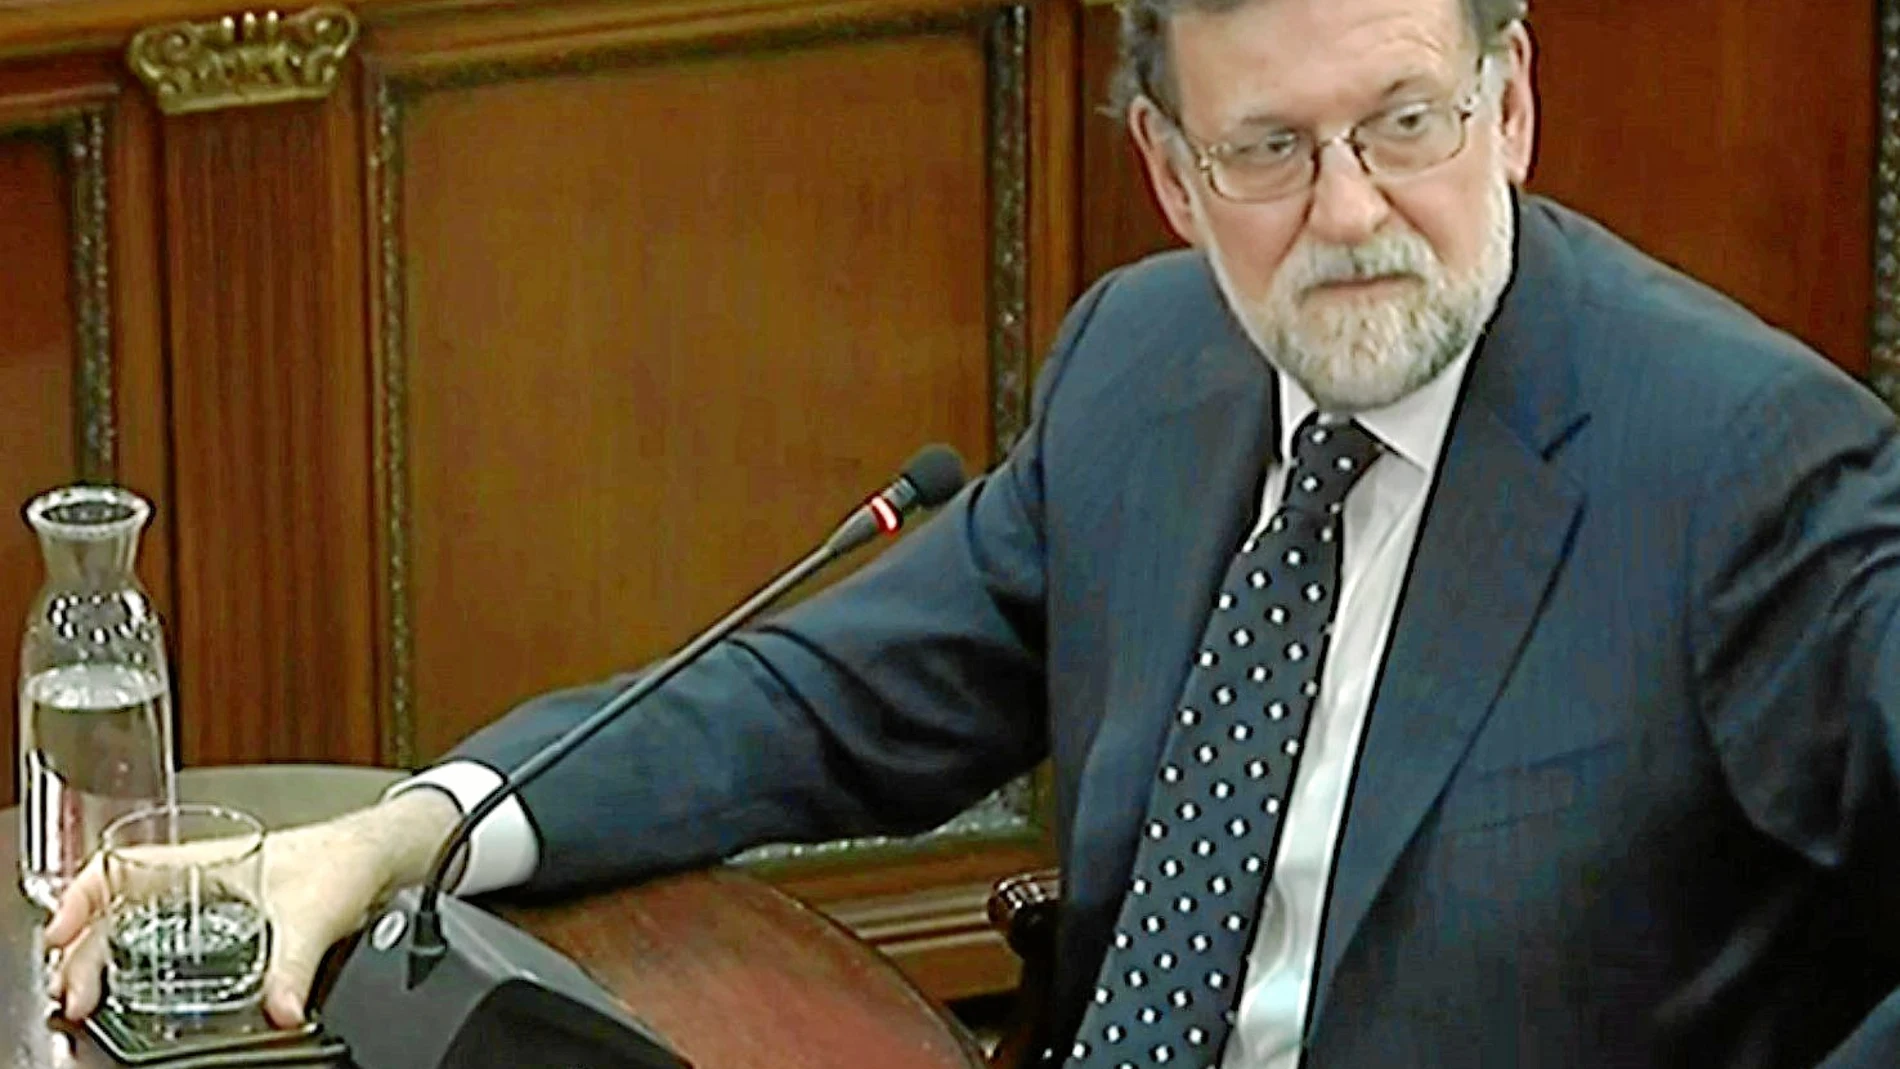 Rajoy, la firmeza del registrador